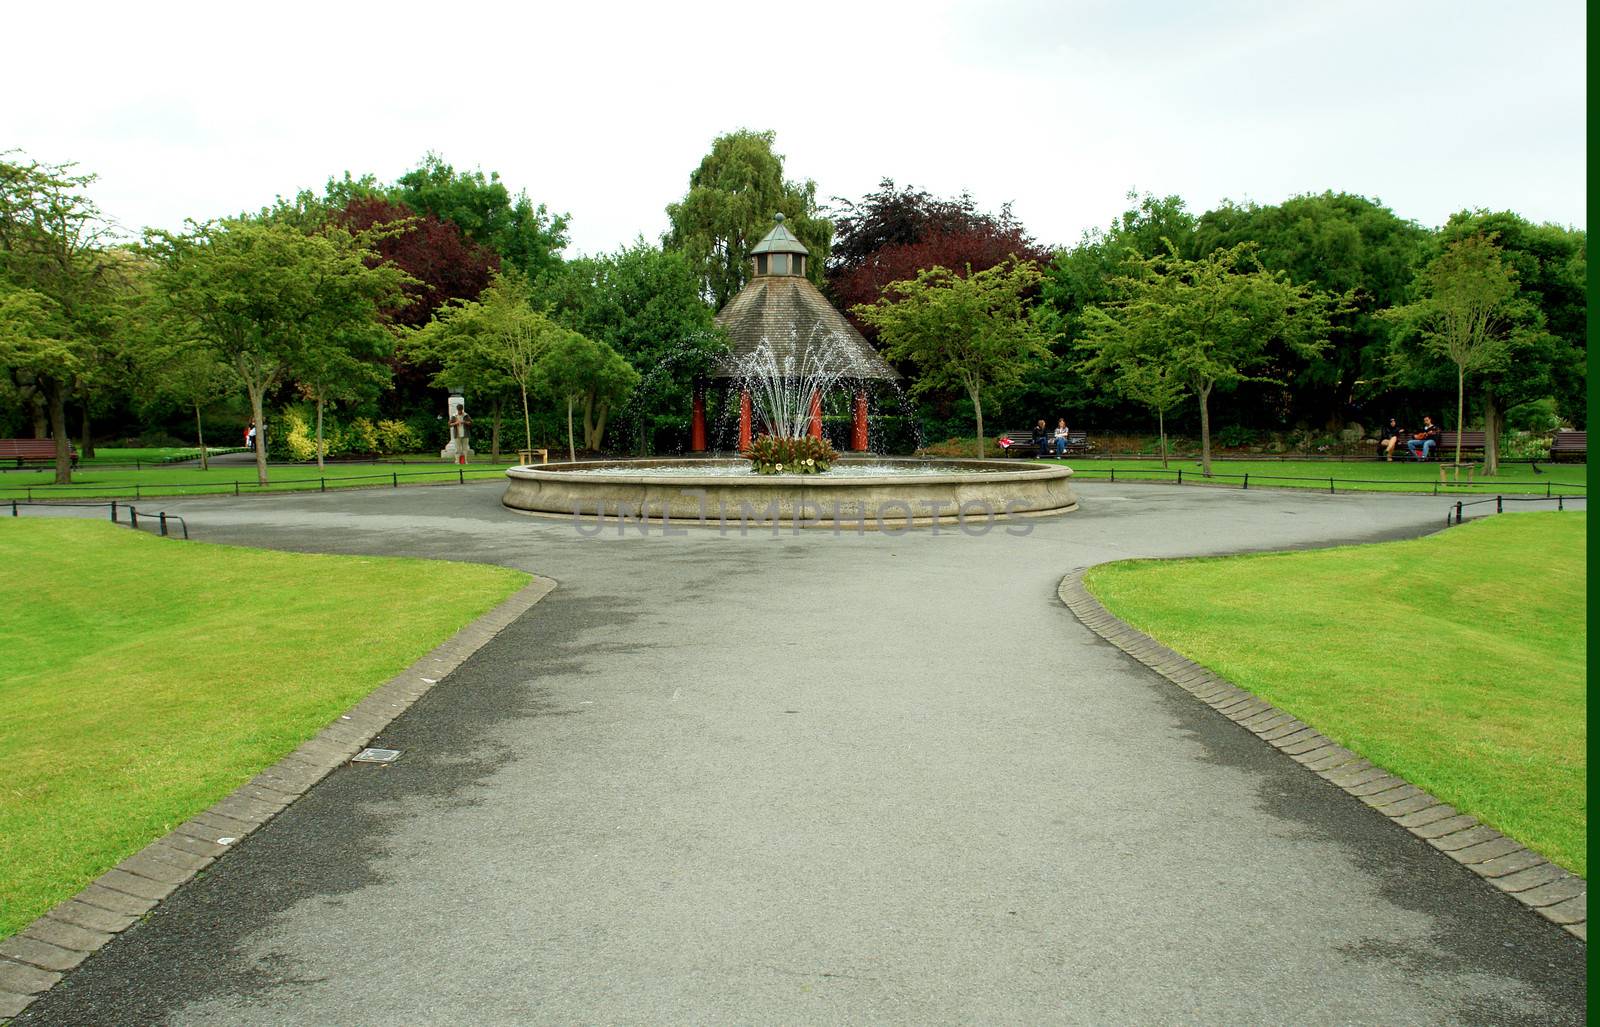 St Stephen's Green park in Dublin